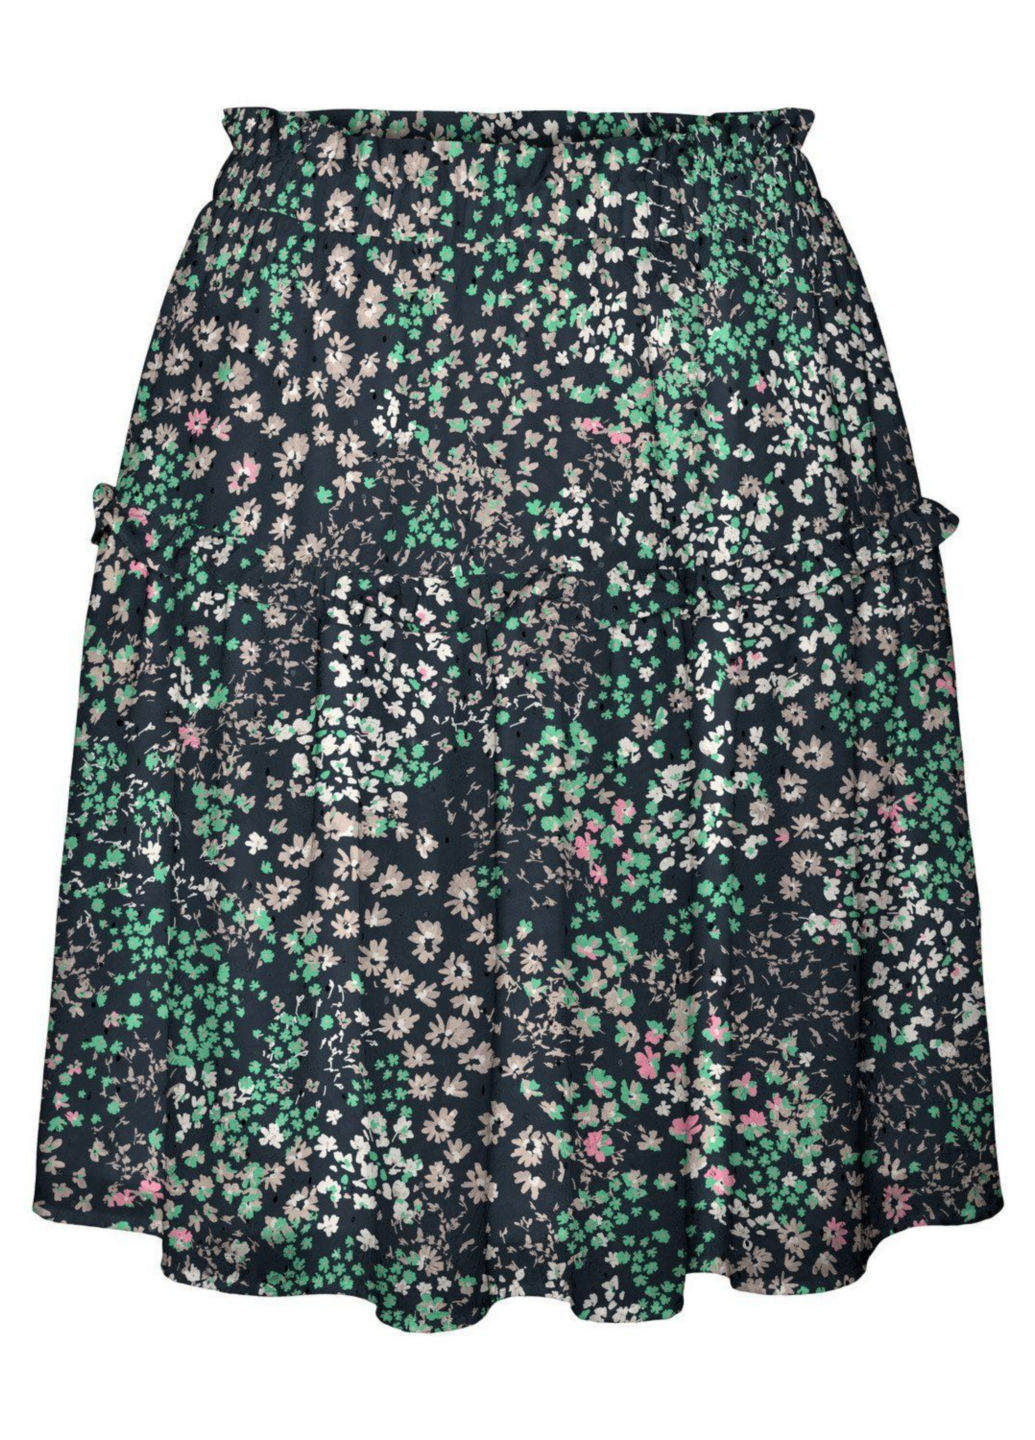 Разноцветная кэжуал цветочной расцветки юбка Vero Moda клешированная